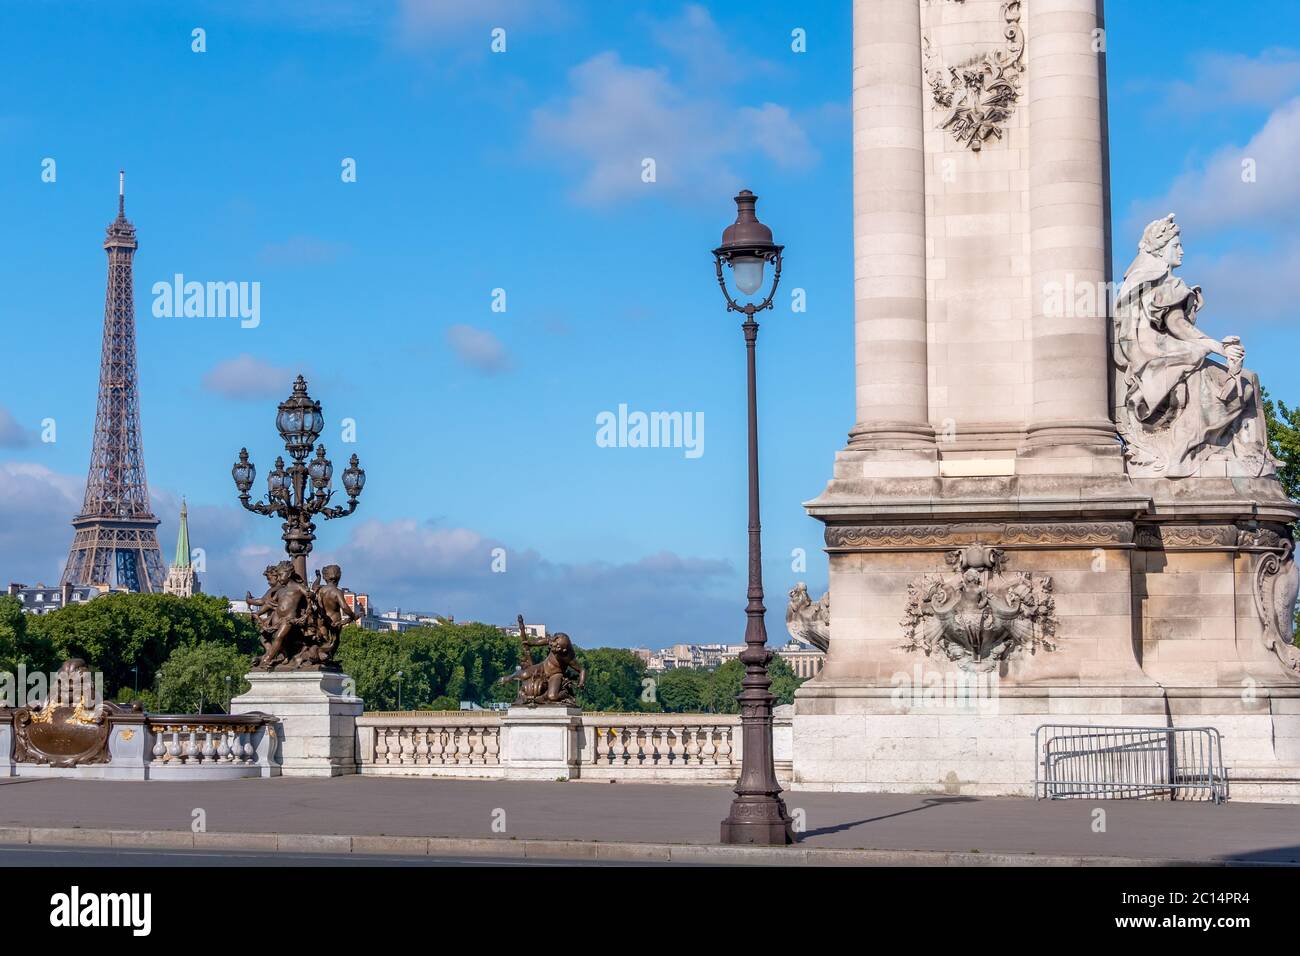 Francia. Día soleado de verano en París. Columna histórica y faroles en el puente Alexandre III a través del río Sena. Torre Eiffel en la distancia Foto de stock